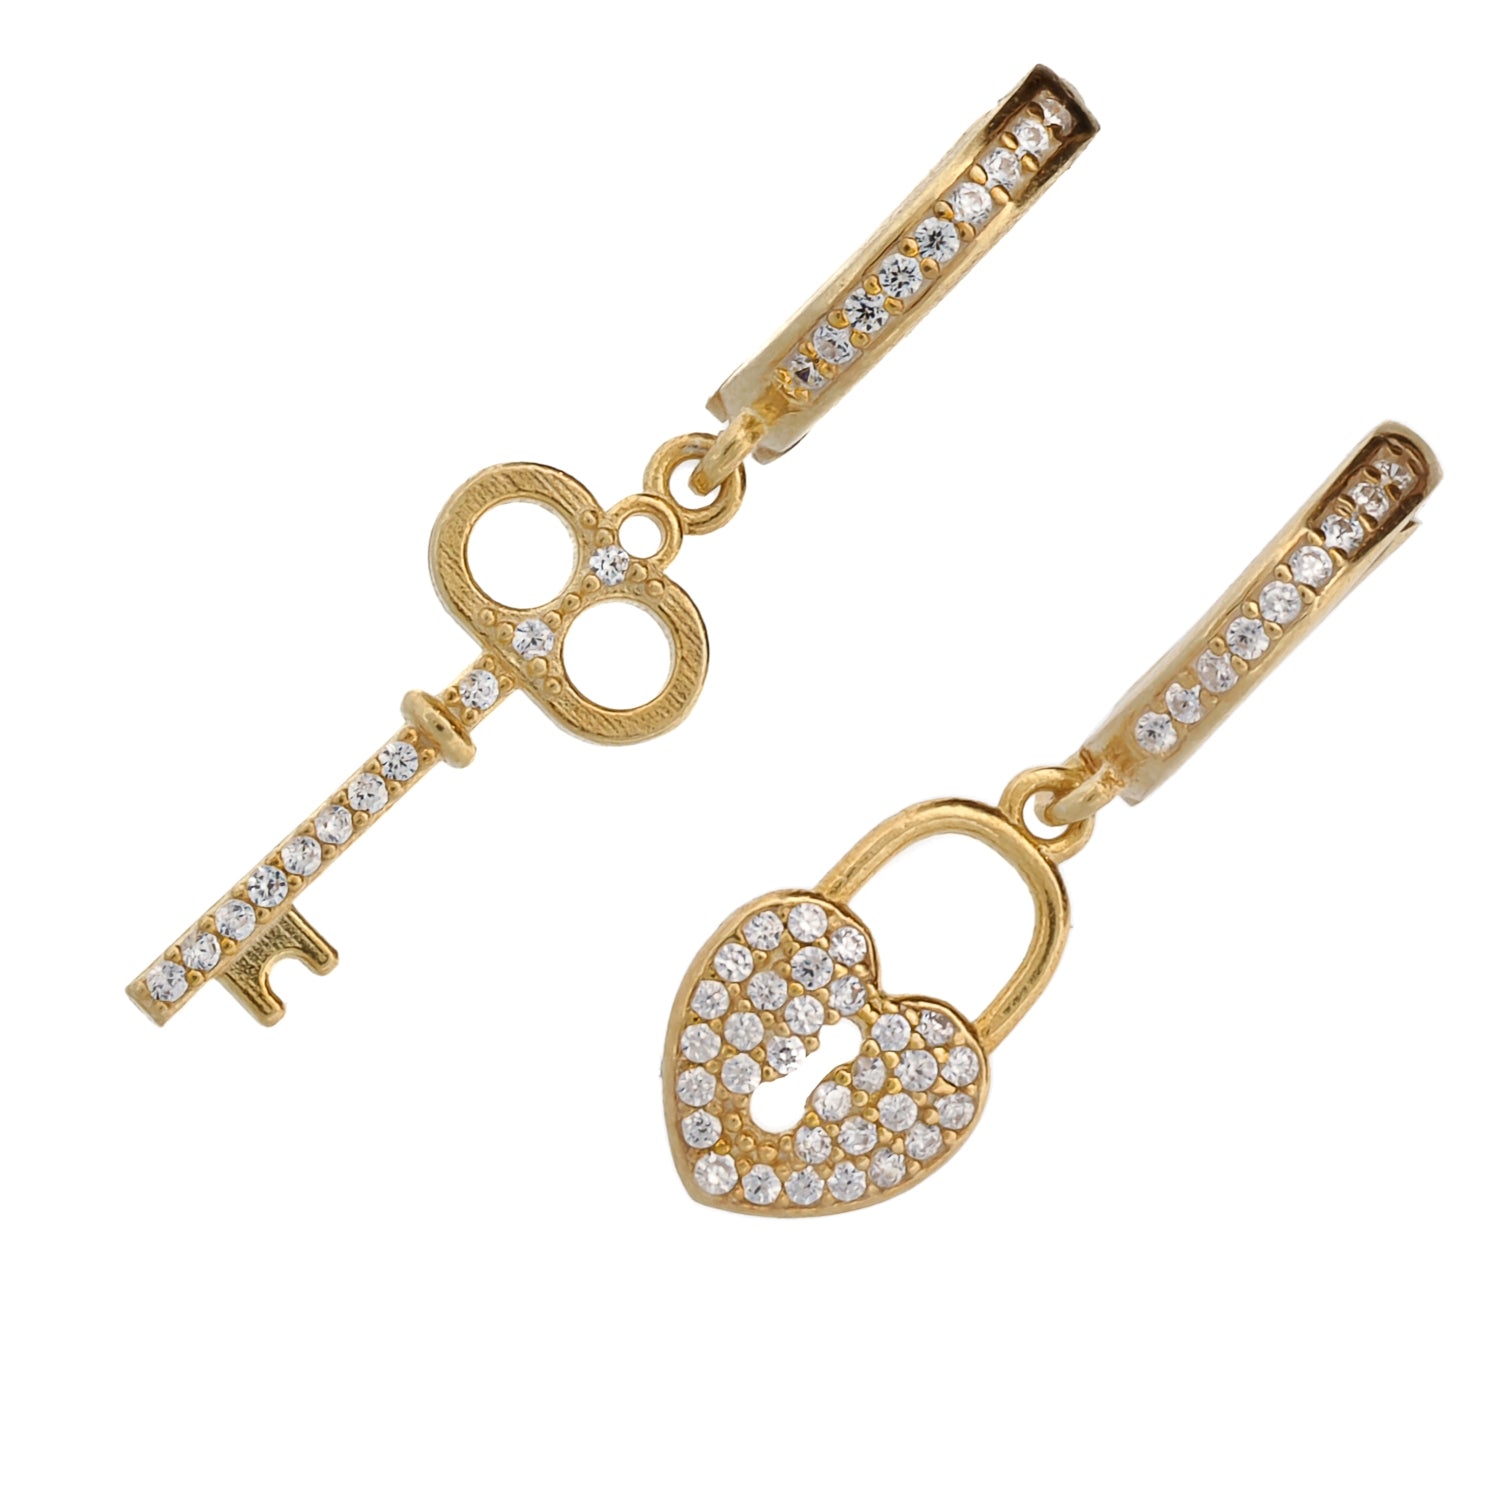 Symbolic Key & Heart Lock Adorned with Dazzling Cz Diamonds